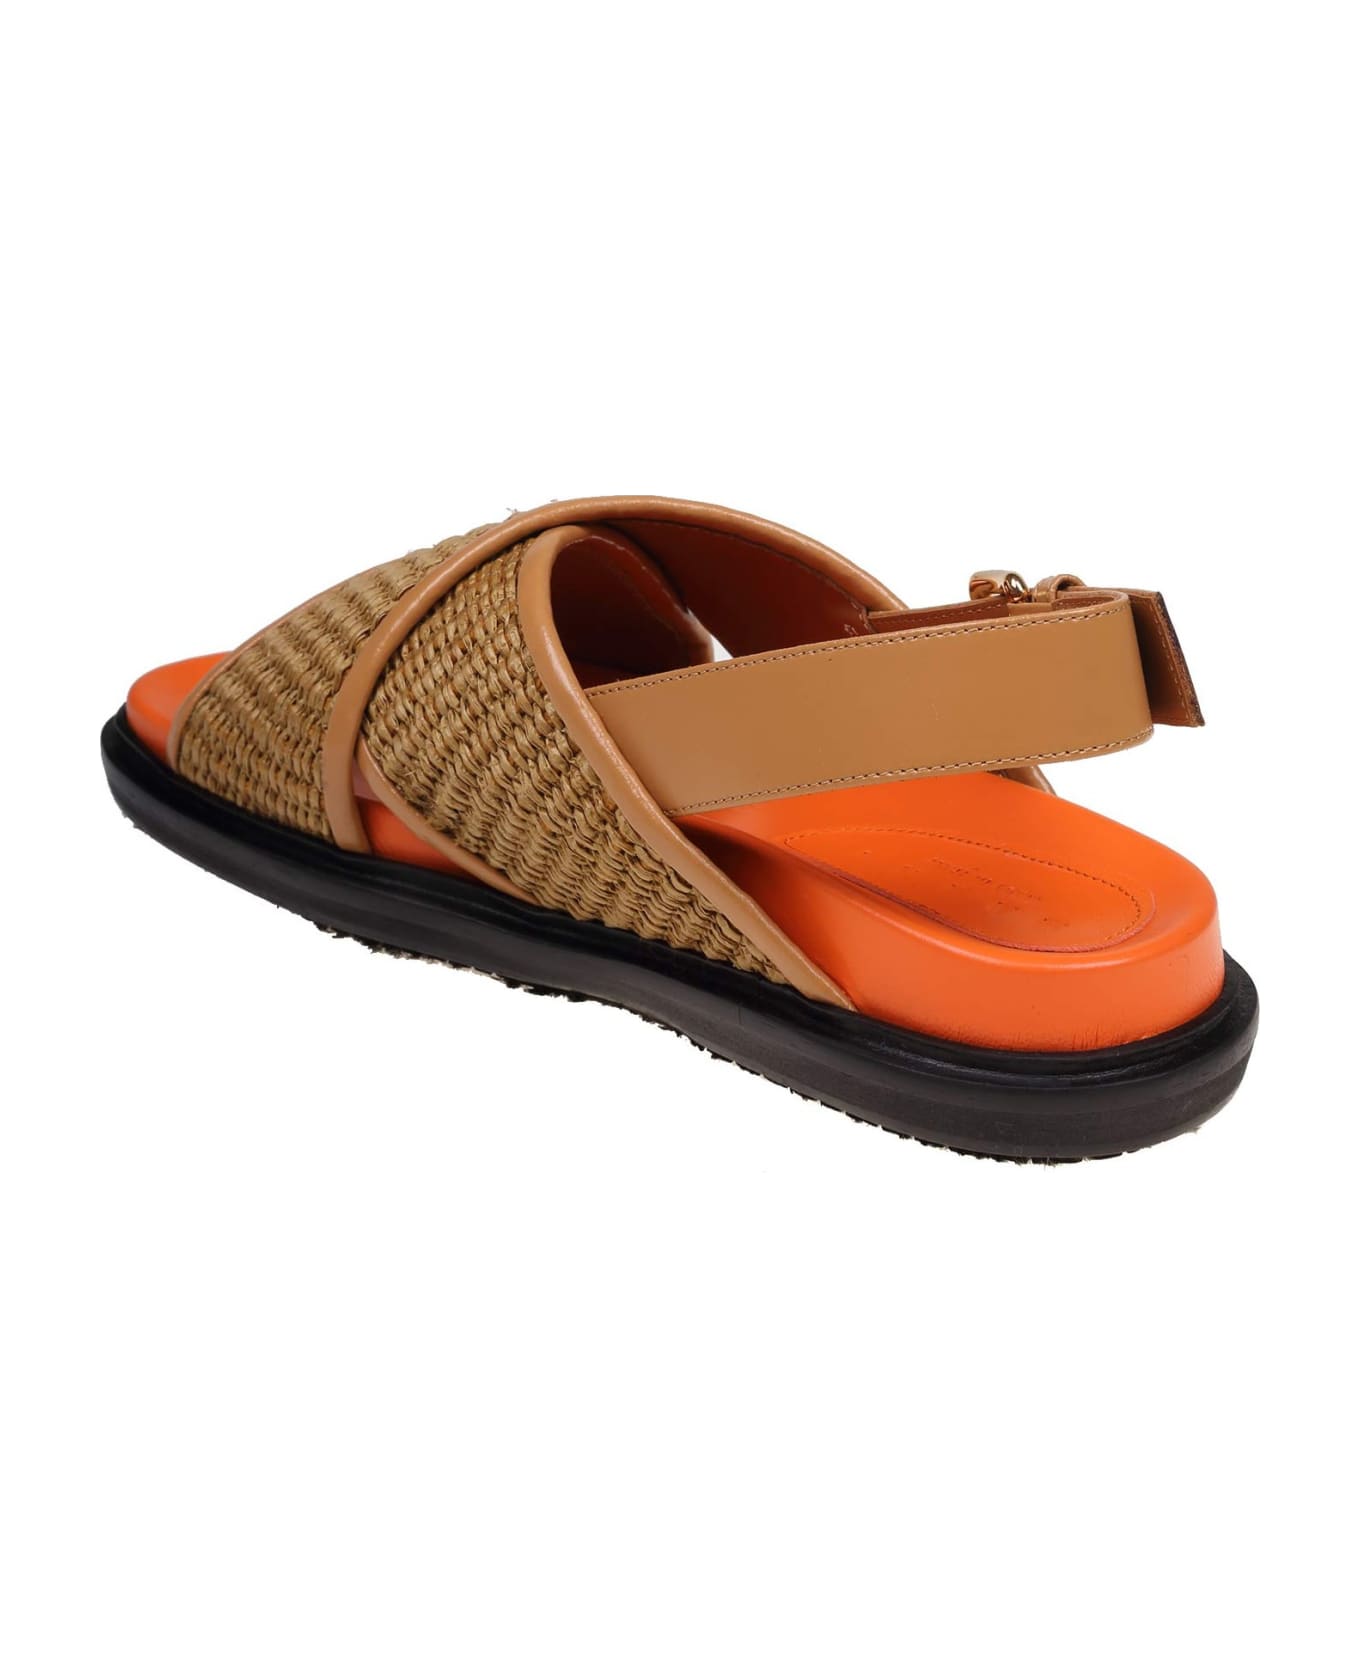 Marni Fusbett Sandals - RAFFIA